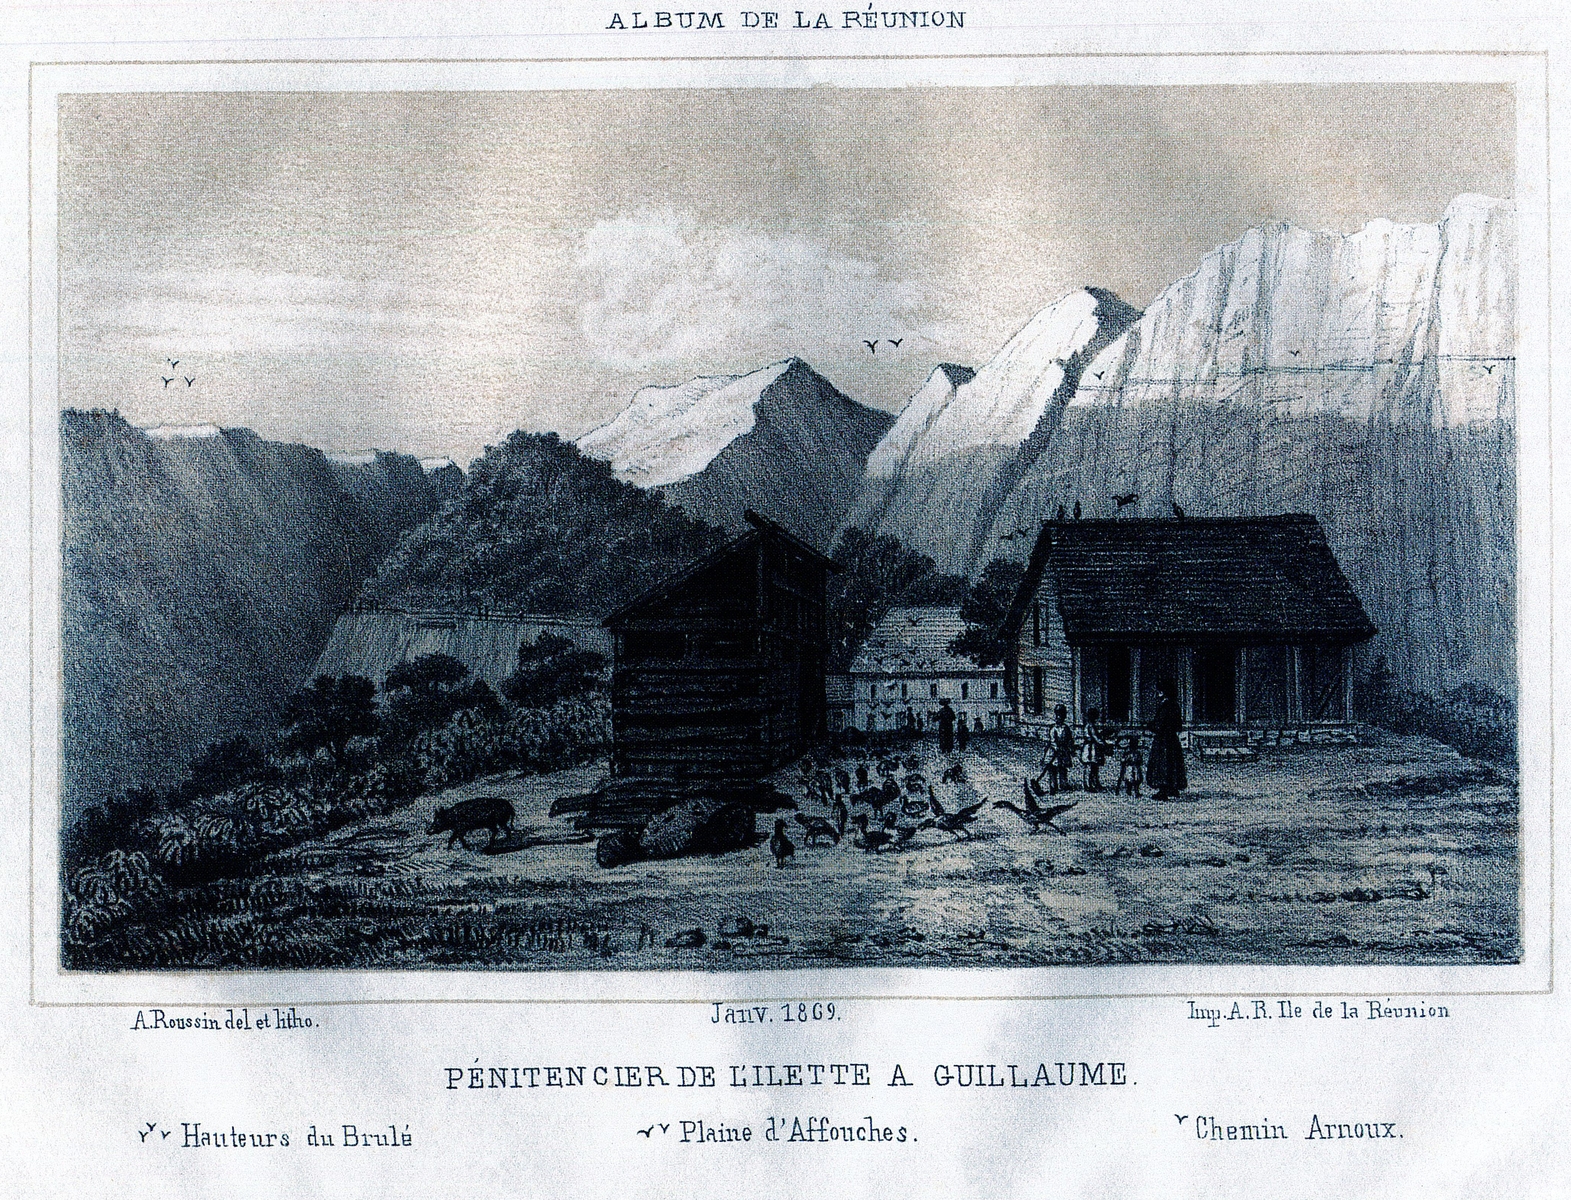 Saint-Denis, Îlet à Guillaume, Pénitencier de l'Ilette à Guillaume, estampe L. A. Roussin, 1869